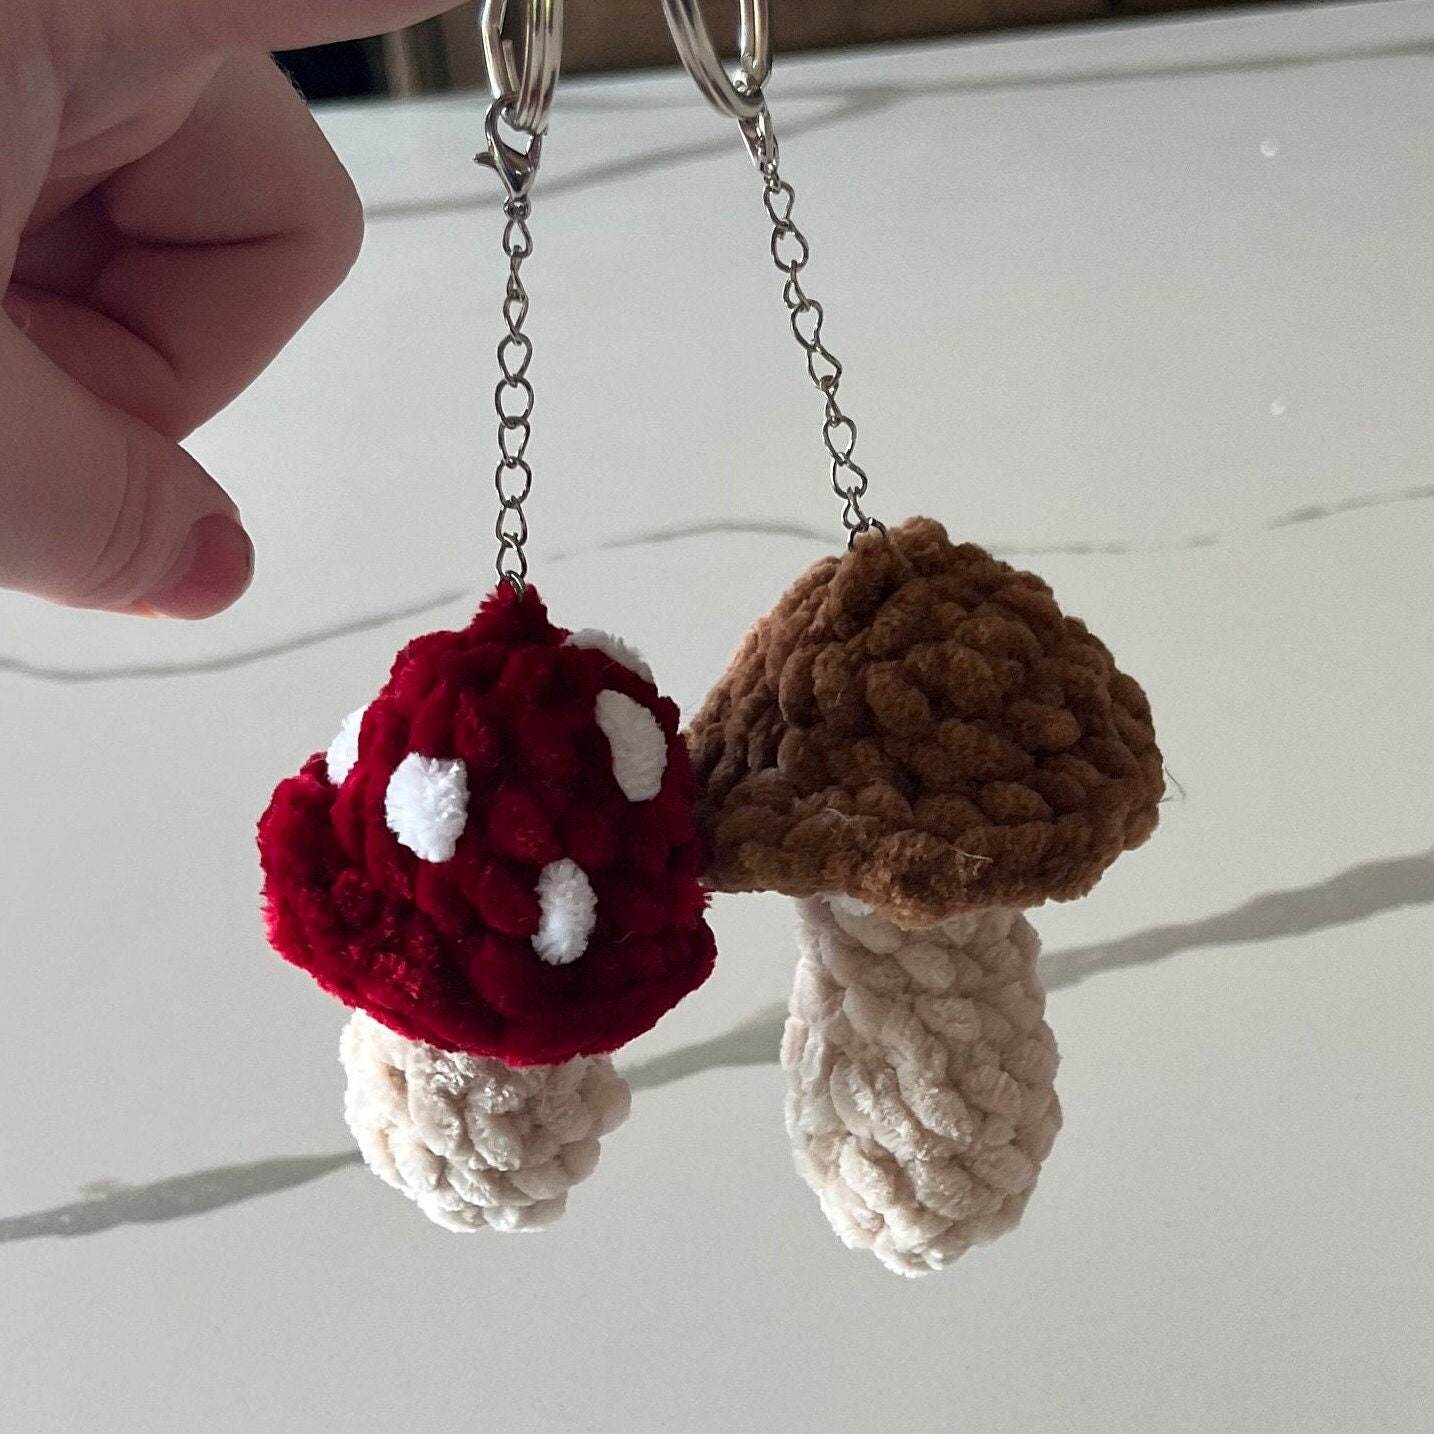 Mushroom Crochet Kit, Sustainable Gift for Crocheter, Ecofriendly Craft  Kit, Mushroom Crochet Pattern, Sustainable DIY, Ecofriendly Crochet 